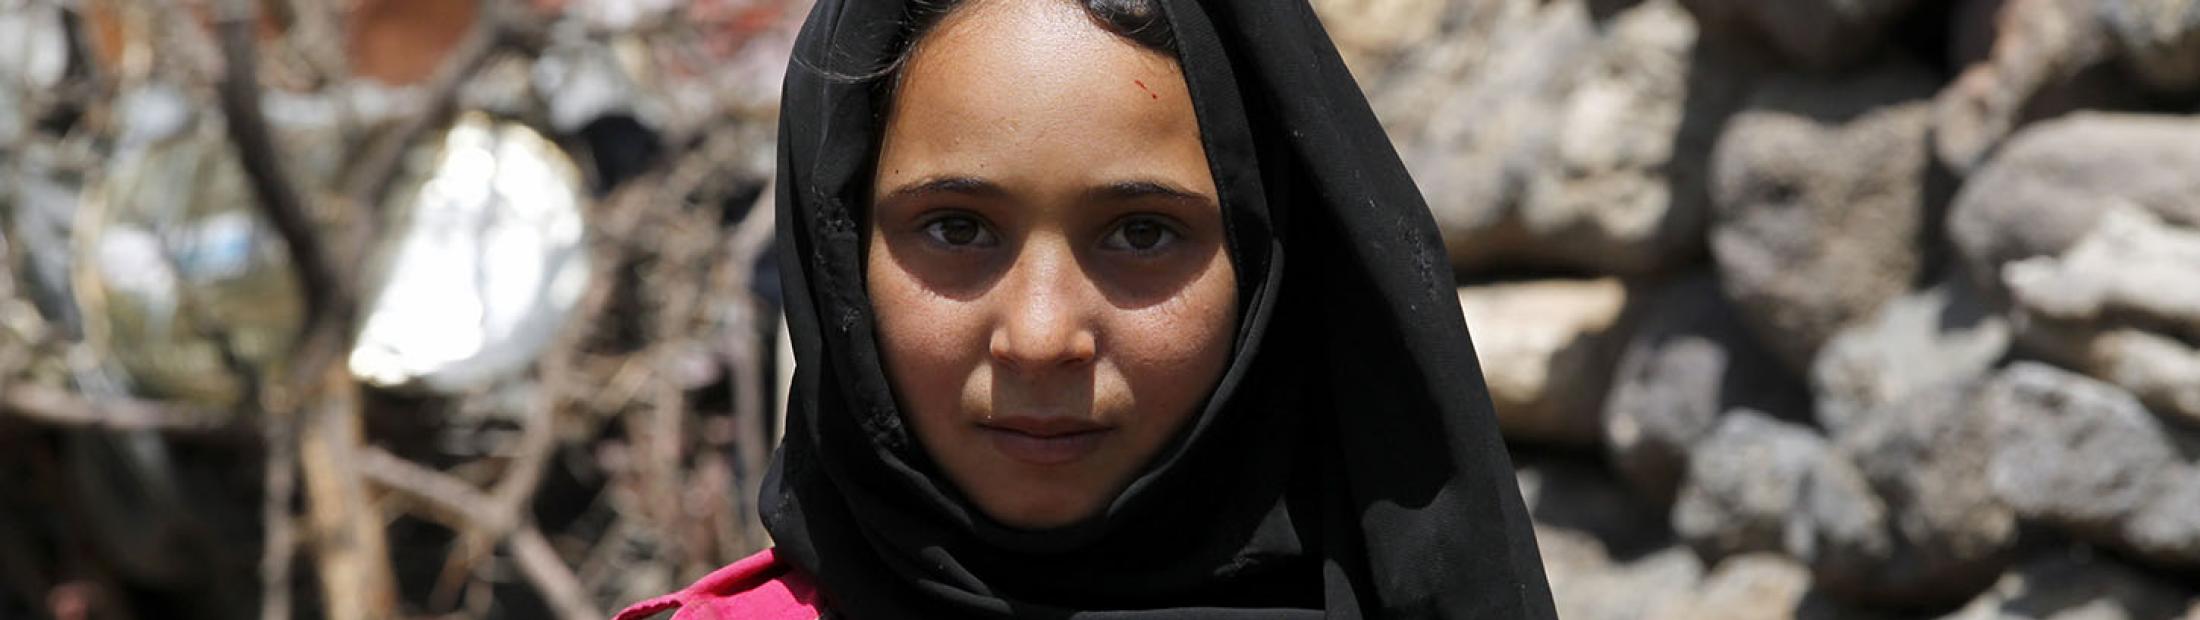 6 años de guerra en Yemen: devastación y pobreza 